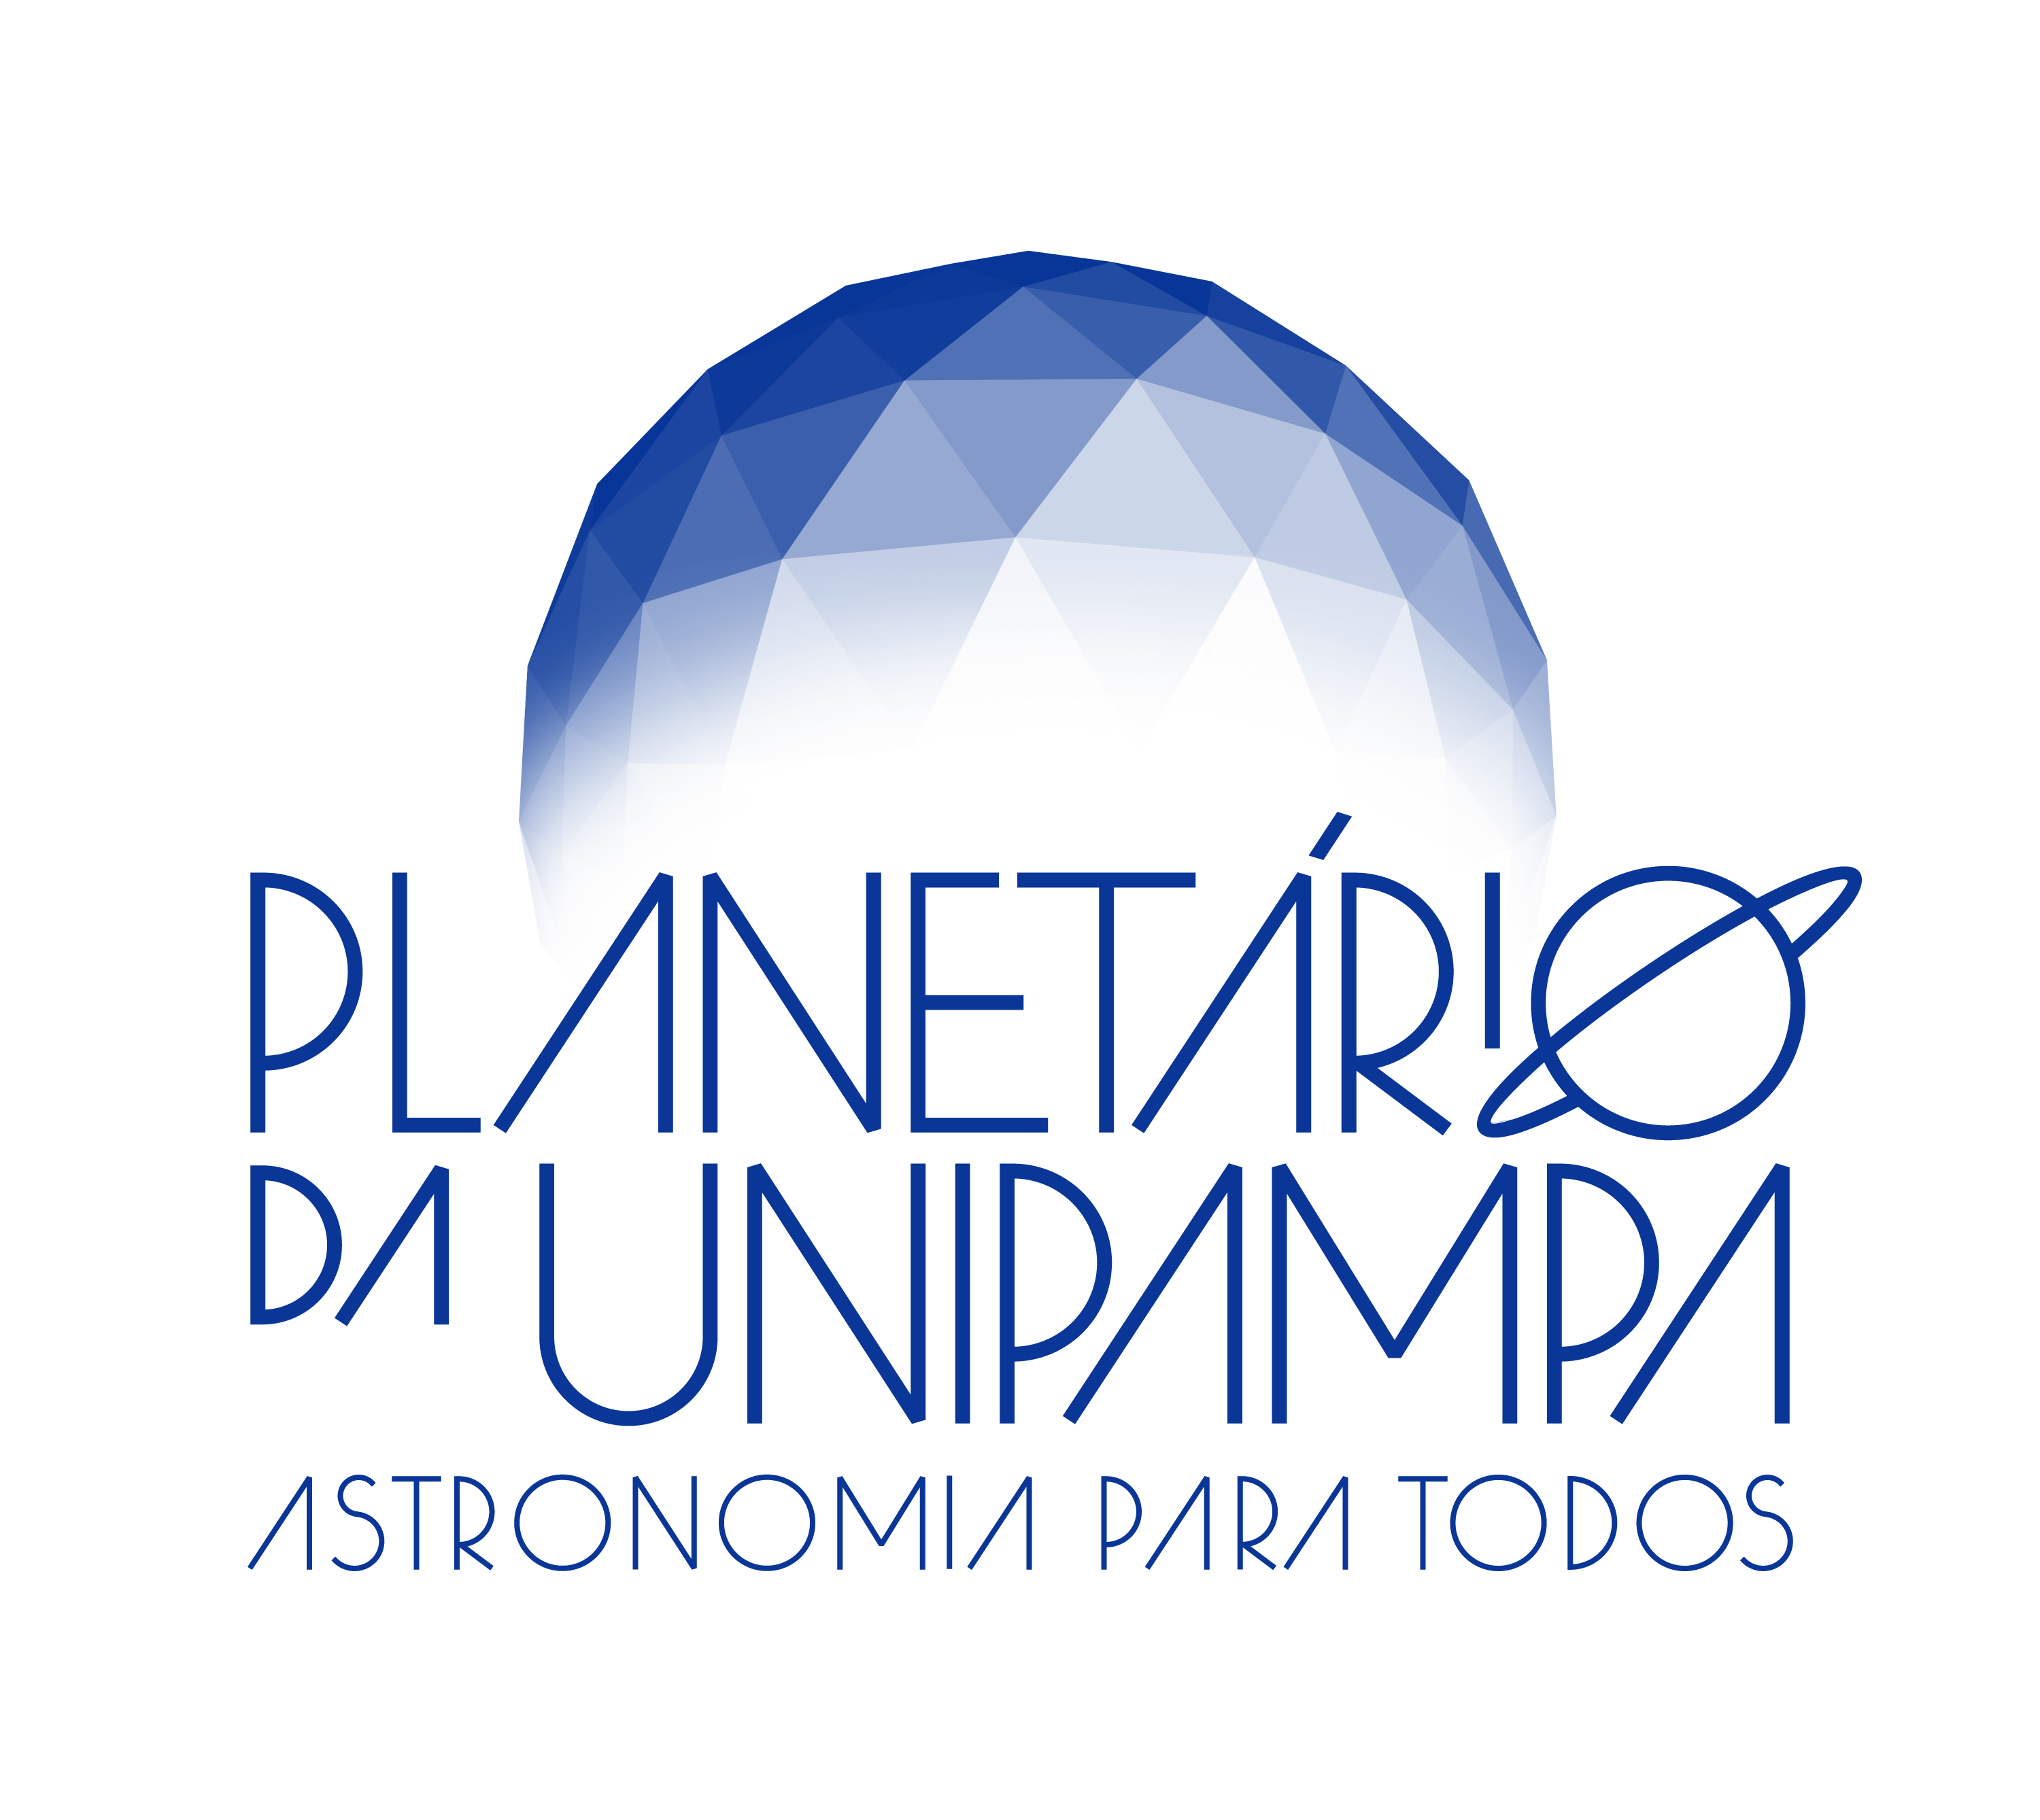 Planetário da Unipampa | Aqui você encontra informações sobre o planetário.